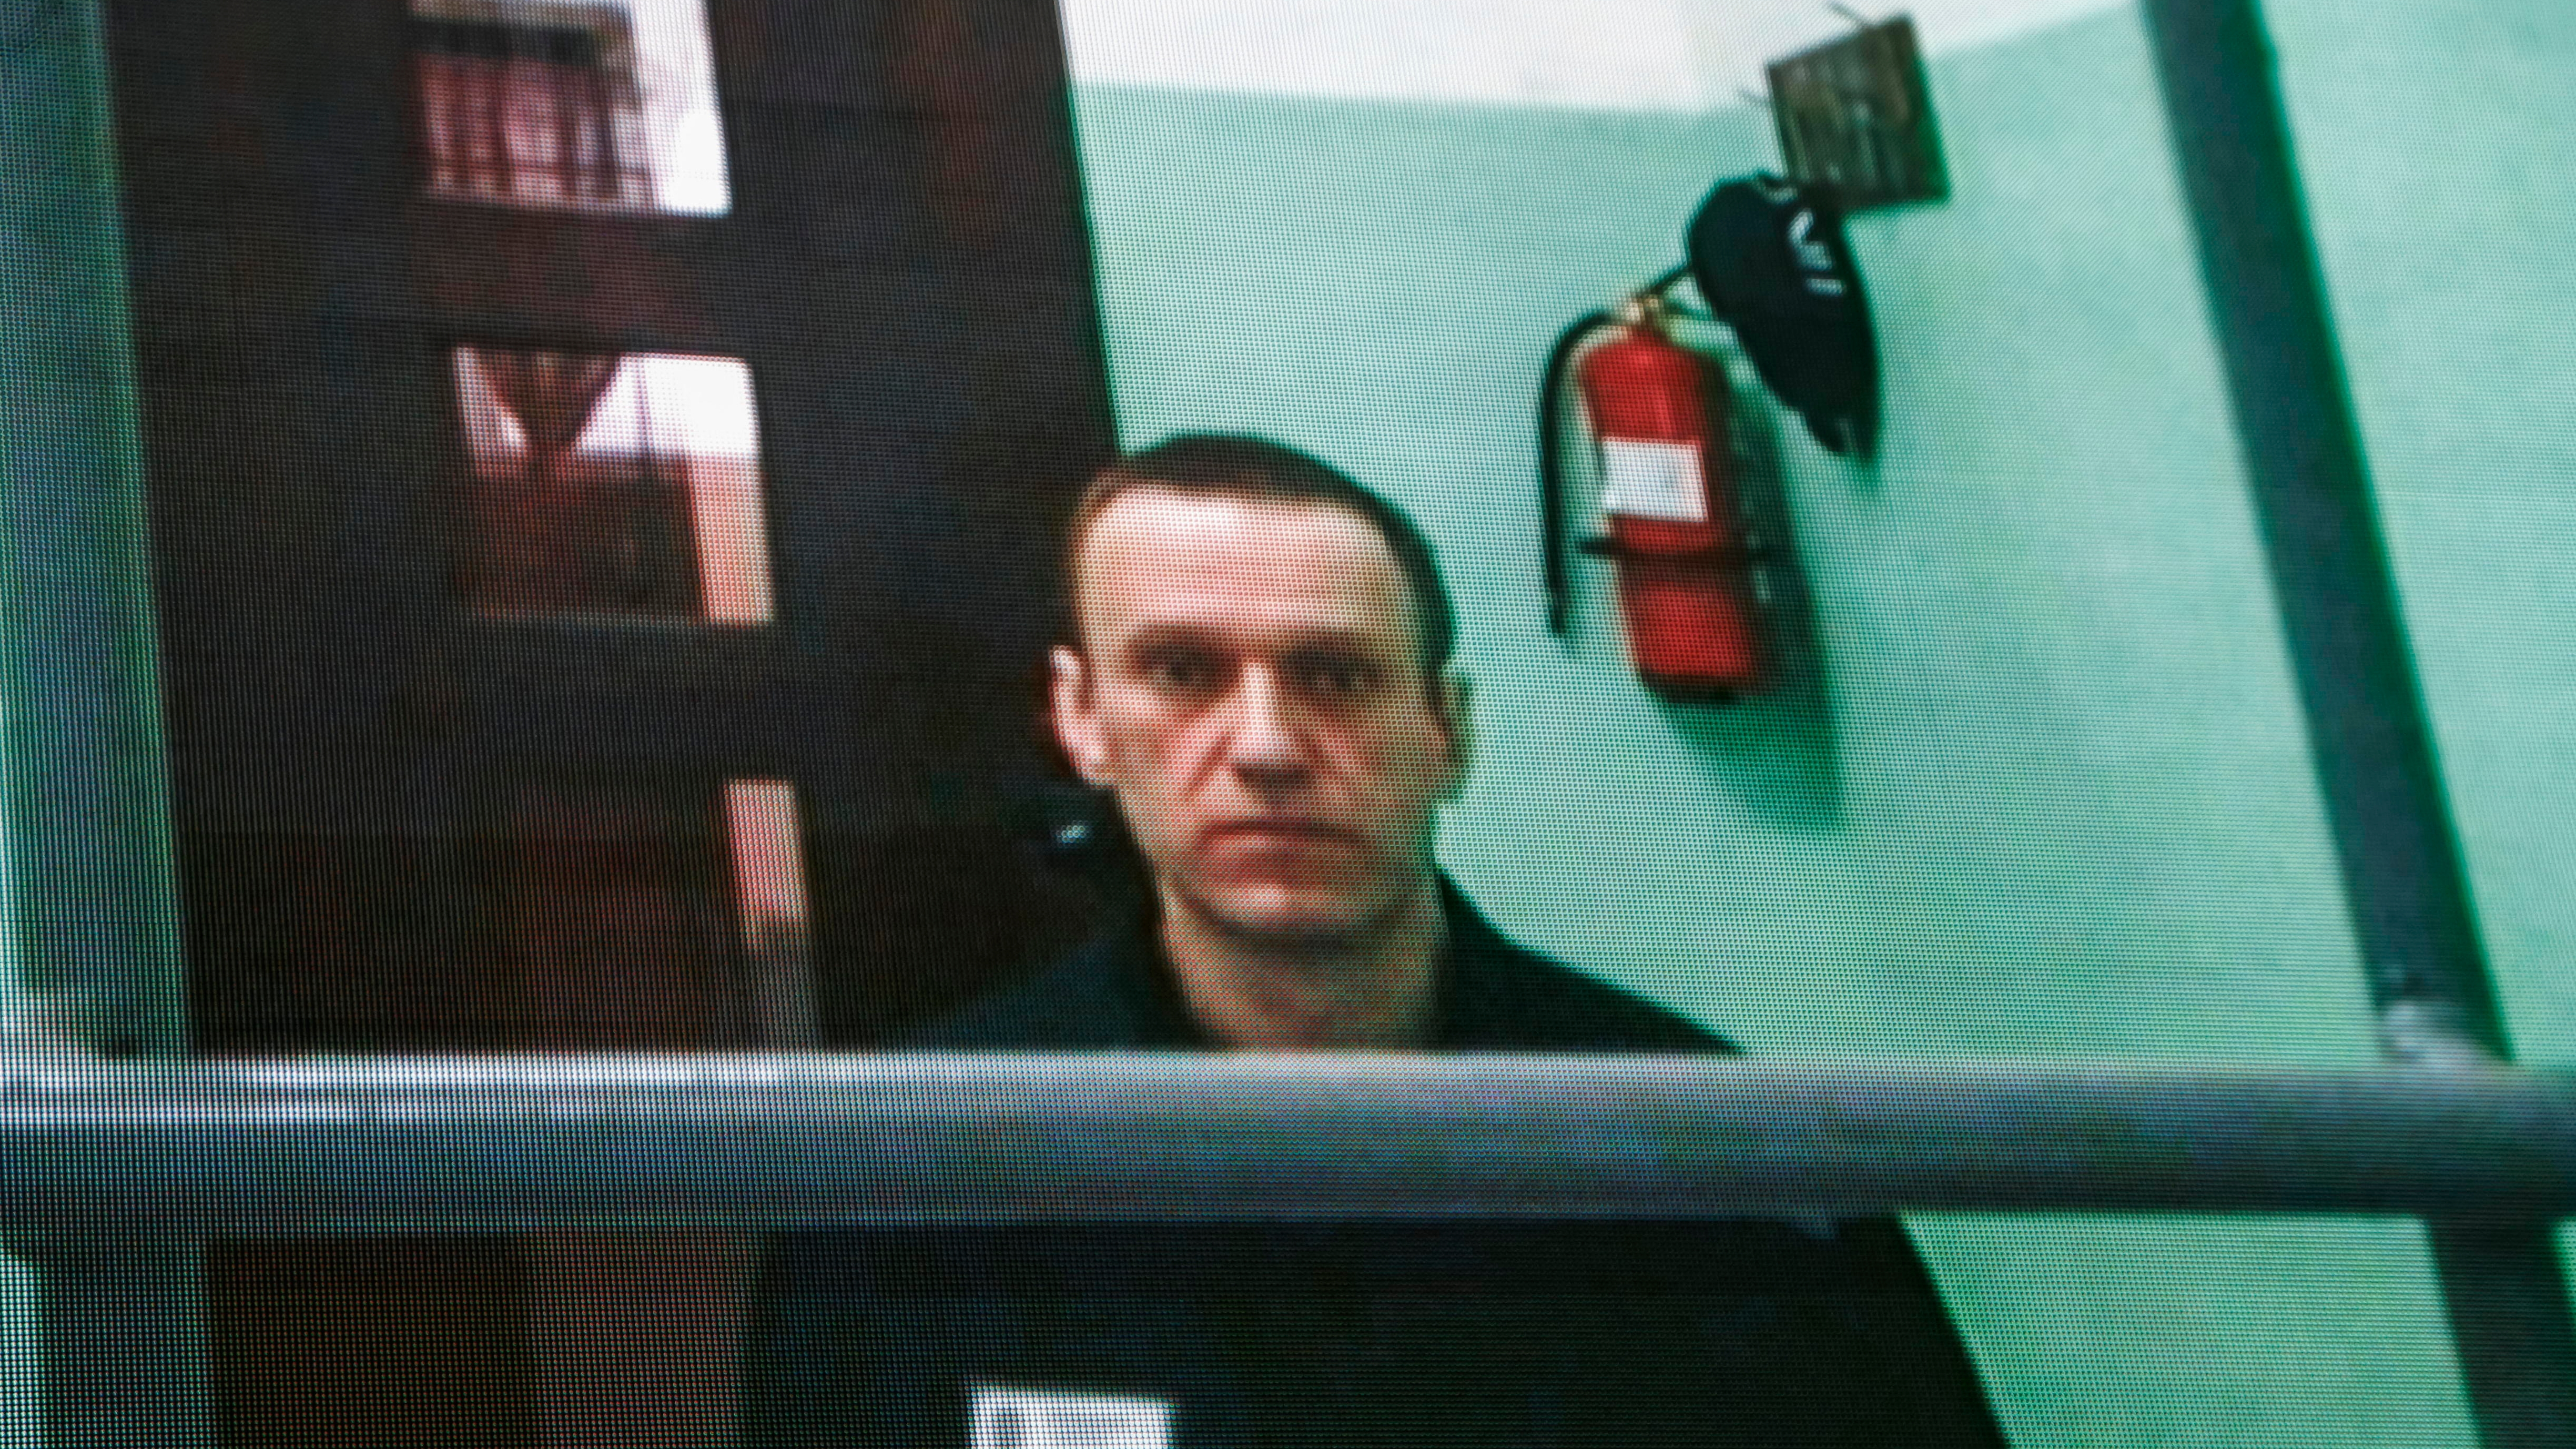 Muere en prisión el opositor ruso Alexei Navalni